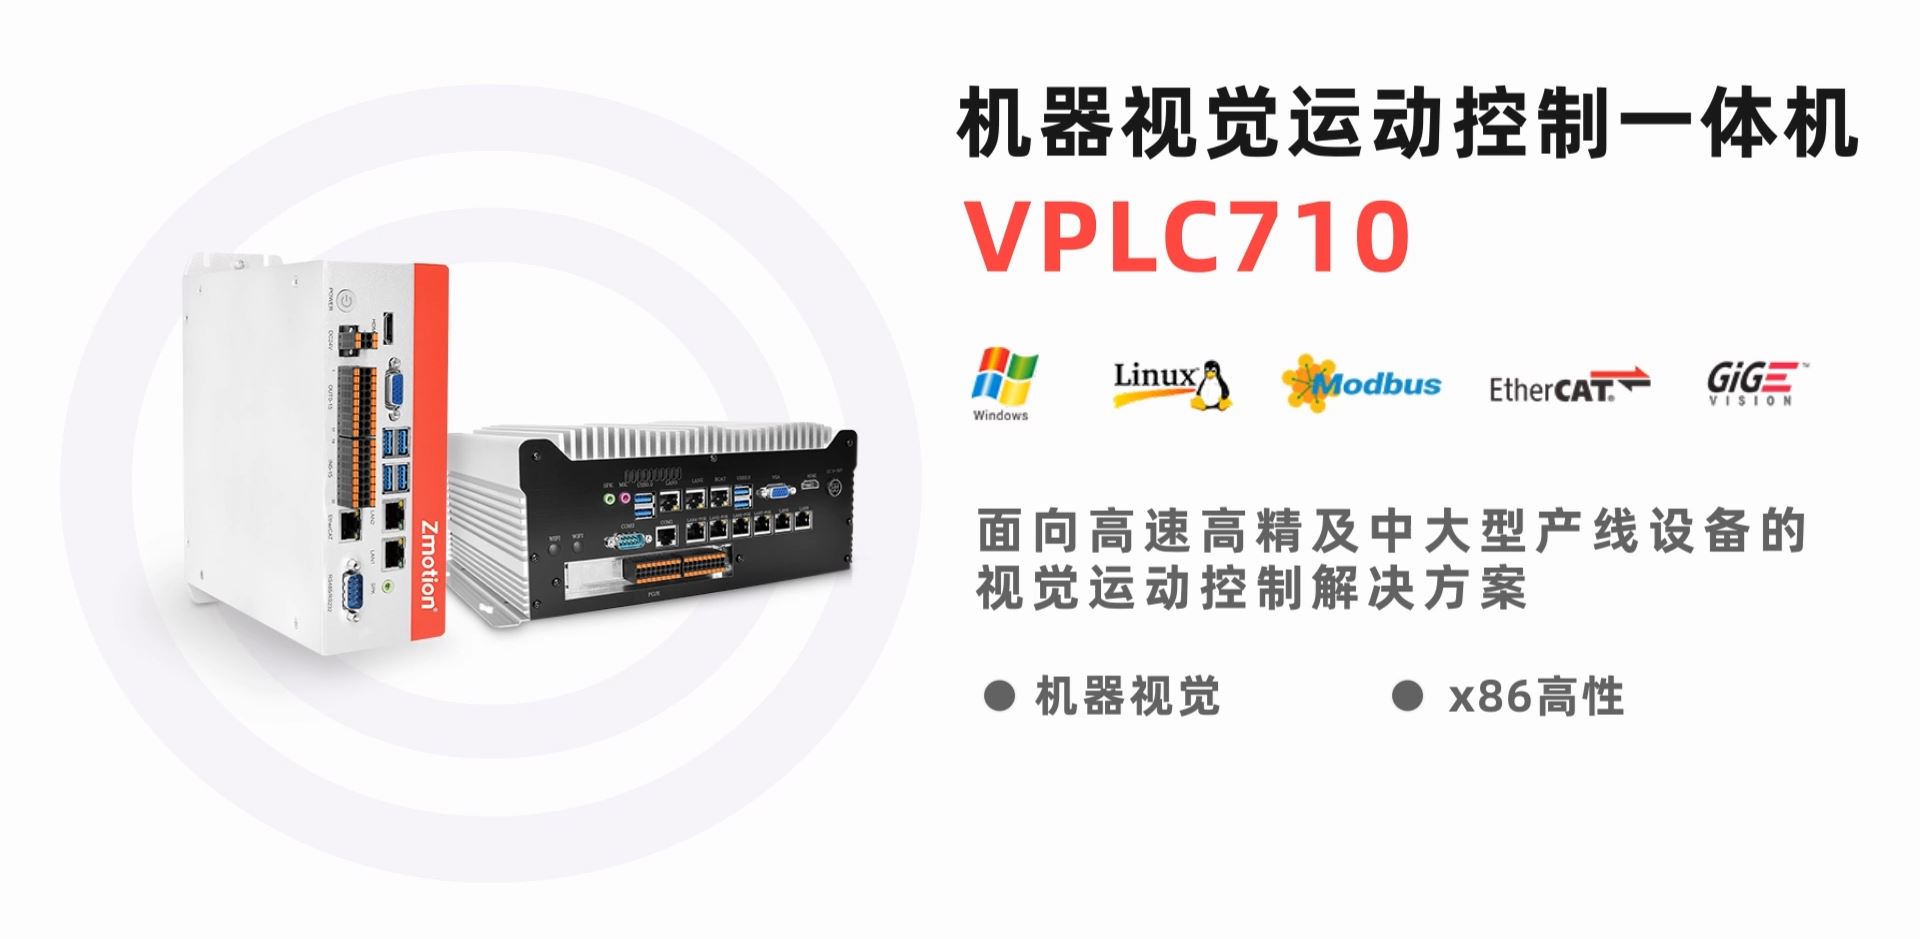 x86机器视觉姐妹互换身份完整版一体机VPLC710